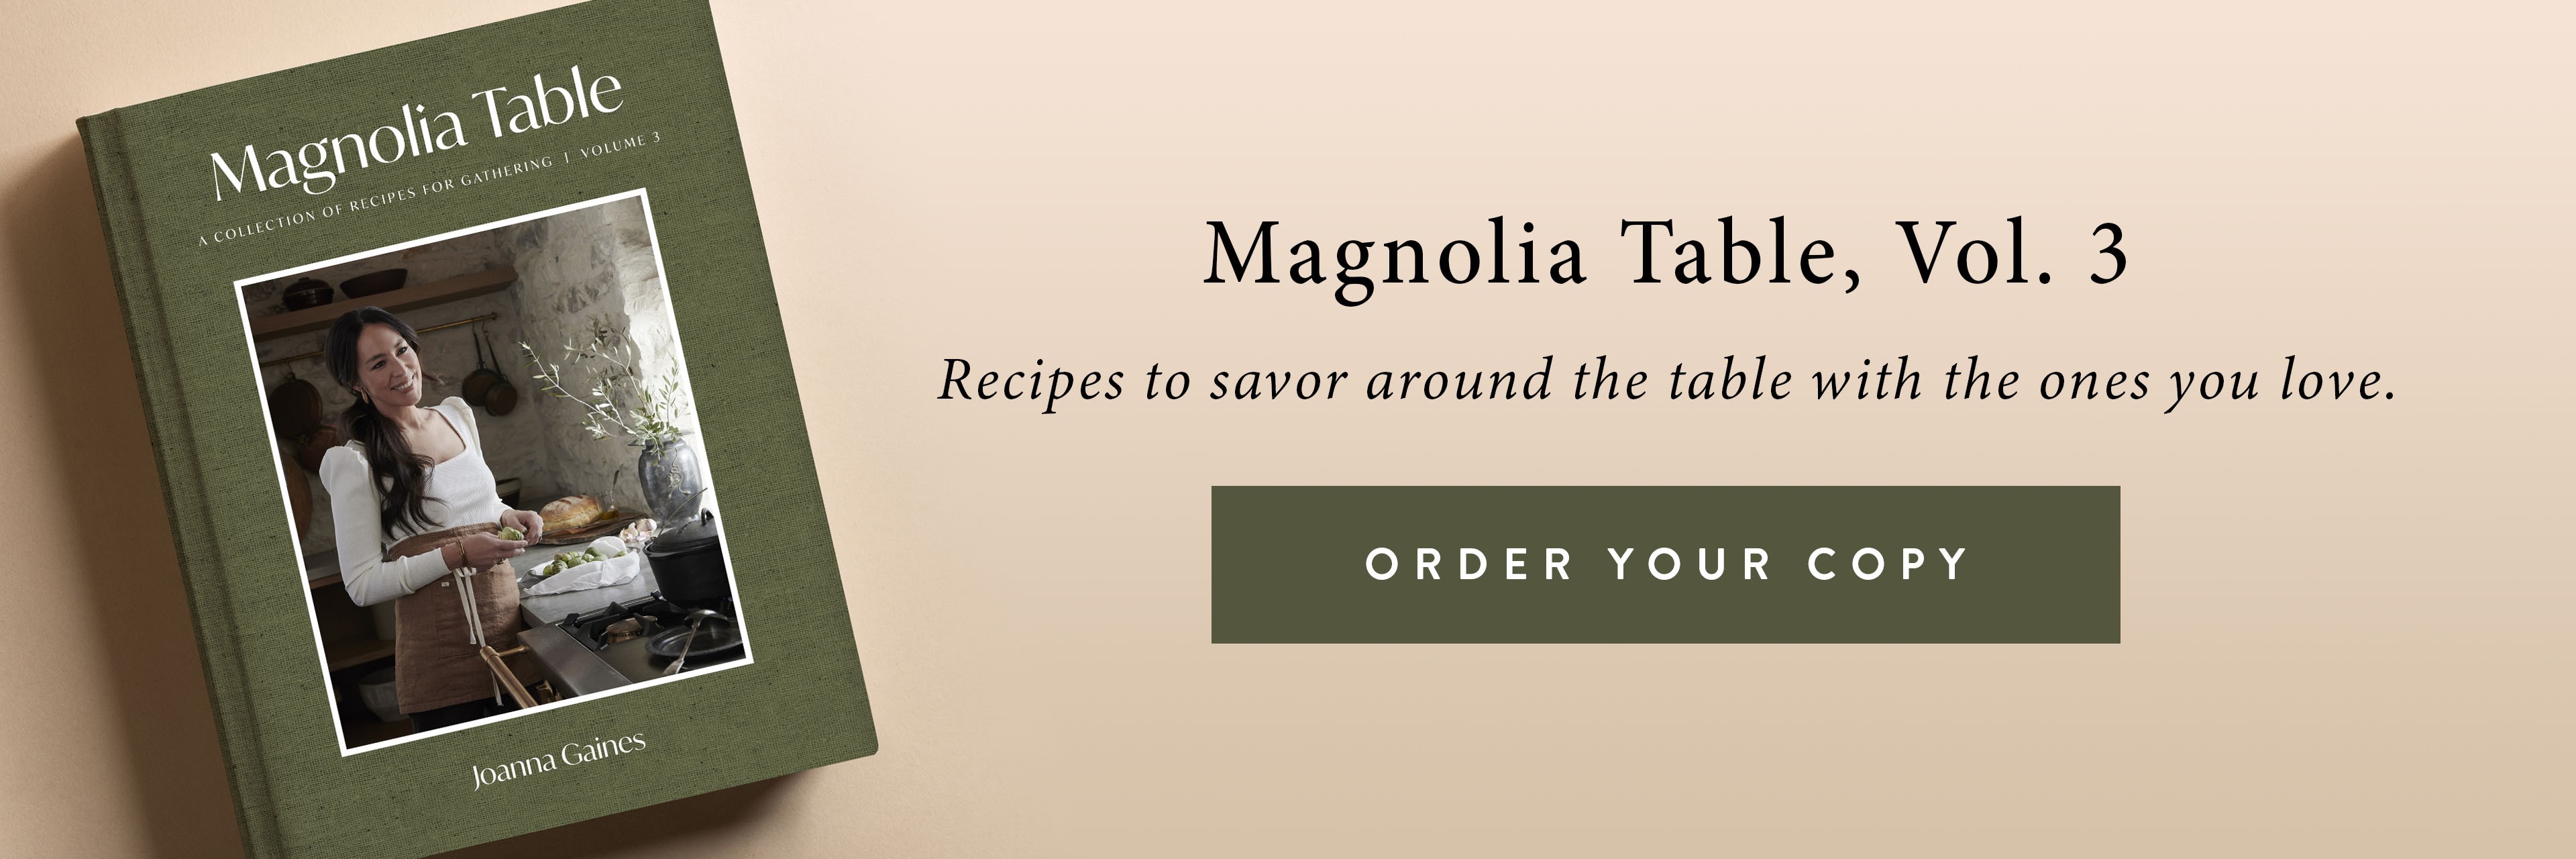 magnolia cookbook volume 3